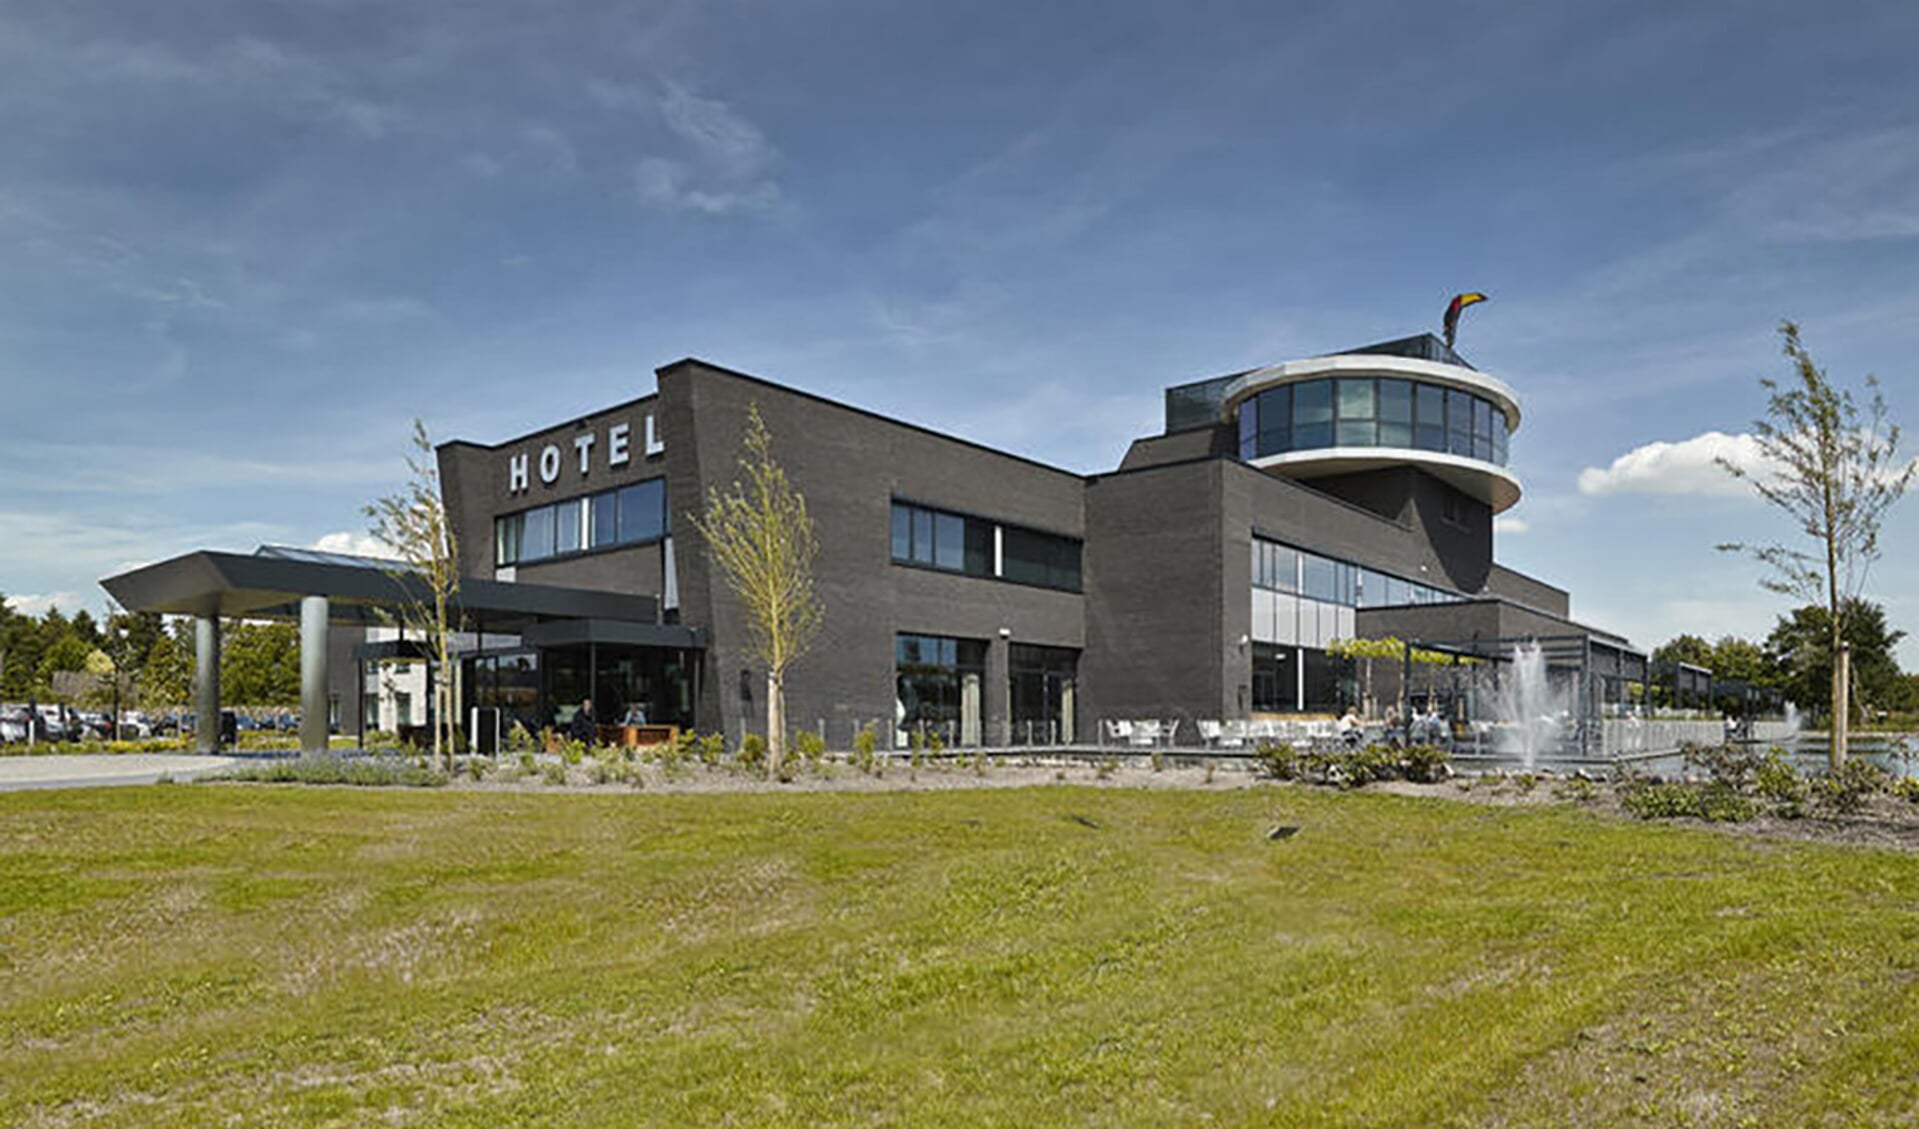 Het Van der Valk hotel in Uden, waar de asielzoekers opgevangen gaan worden.